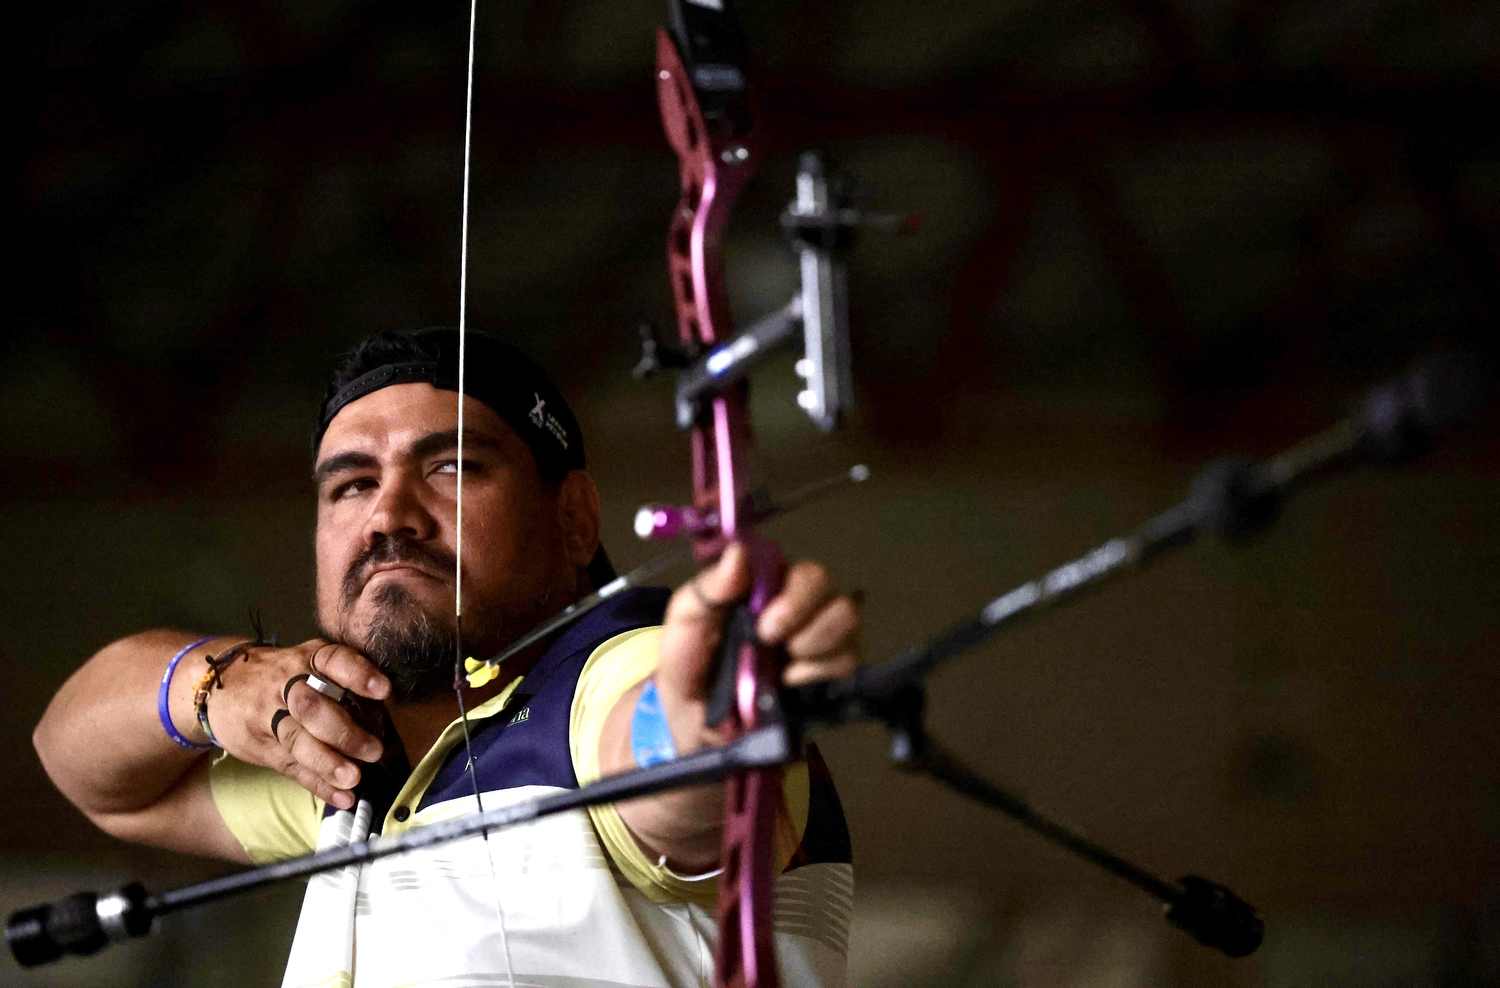 Arquero Óscar Ticas venció la adversidad y cumple su sueño olímpico